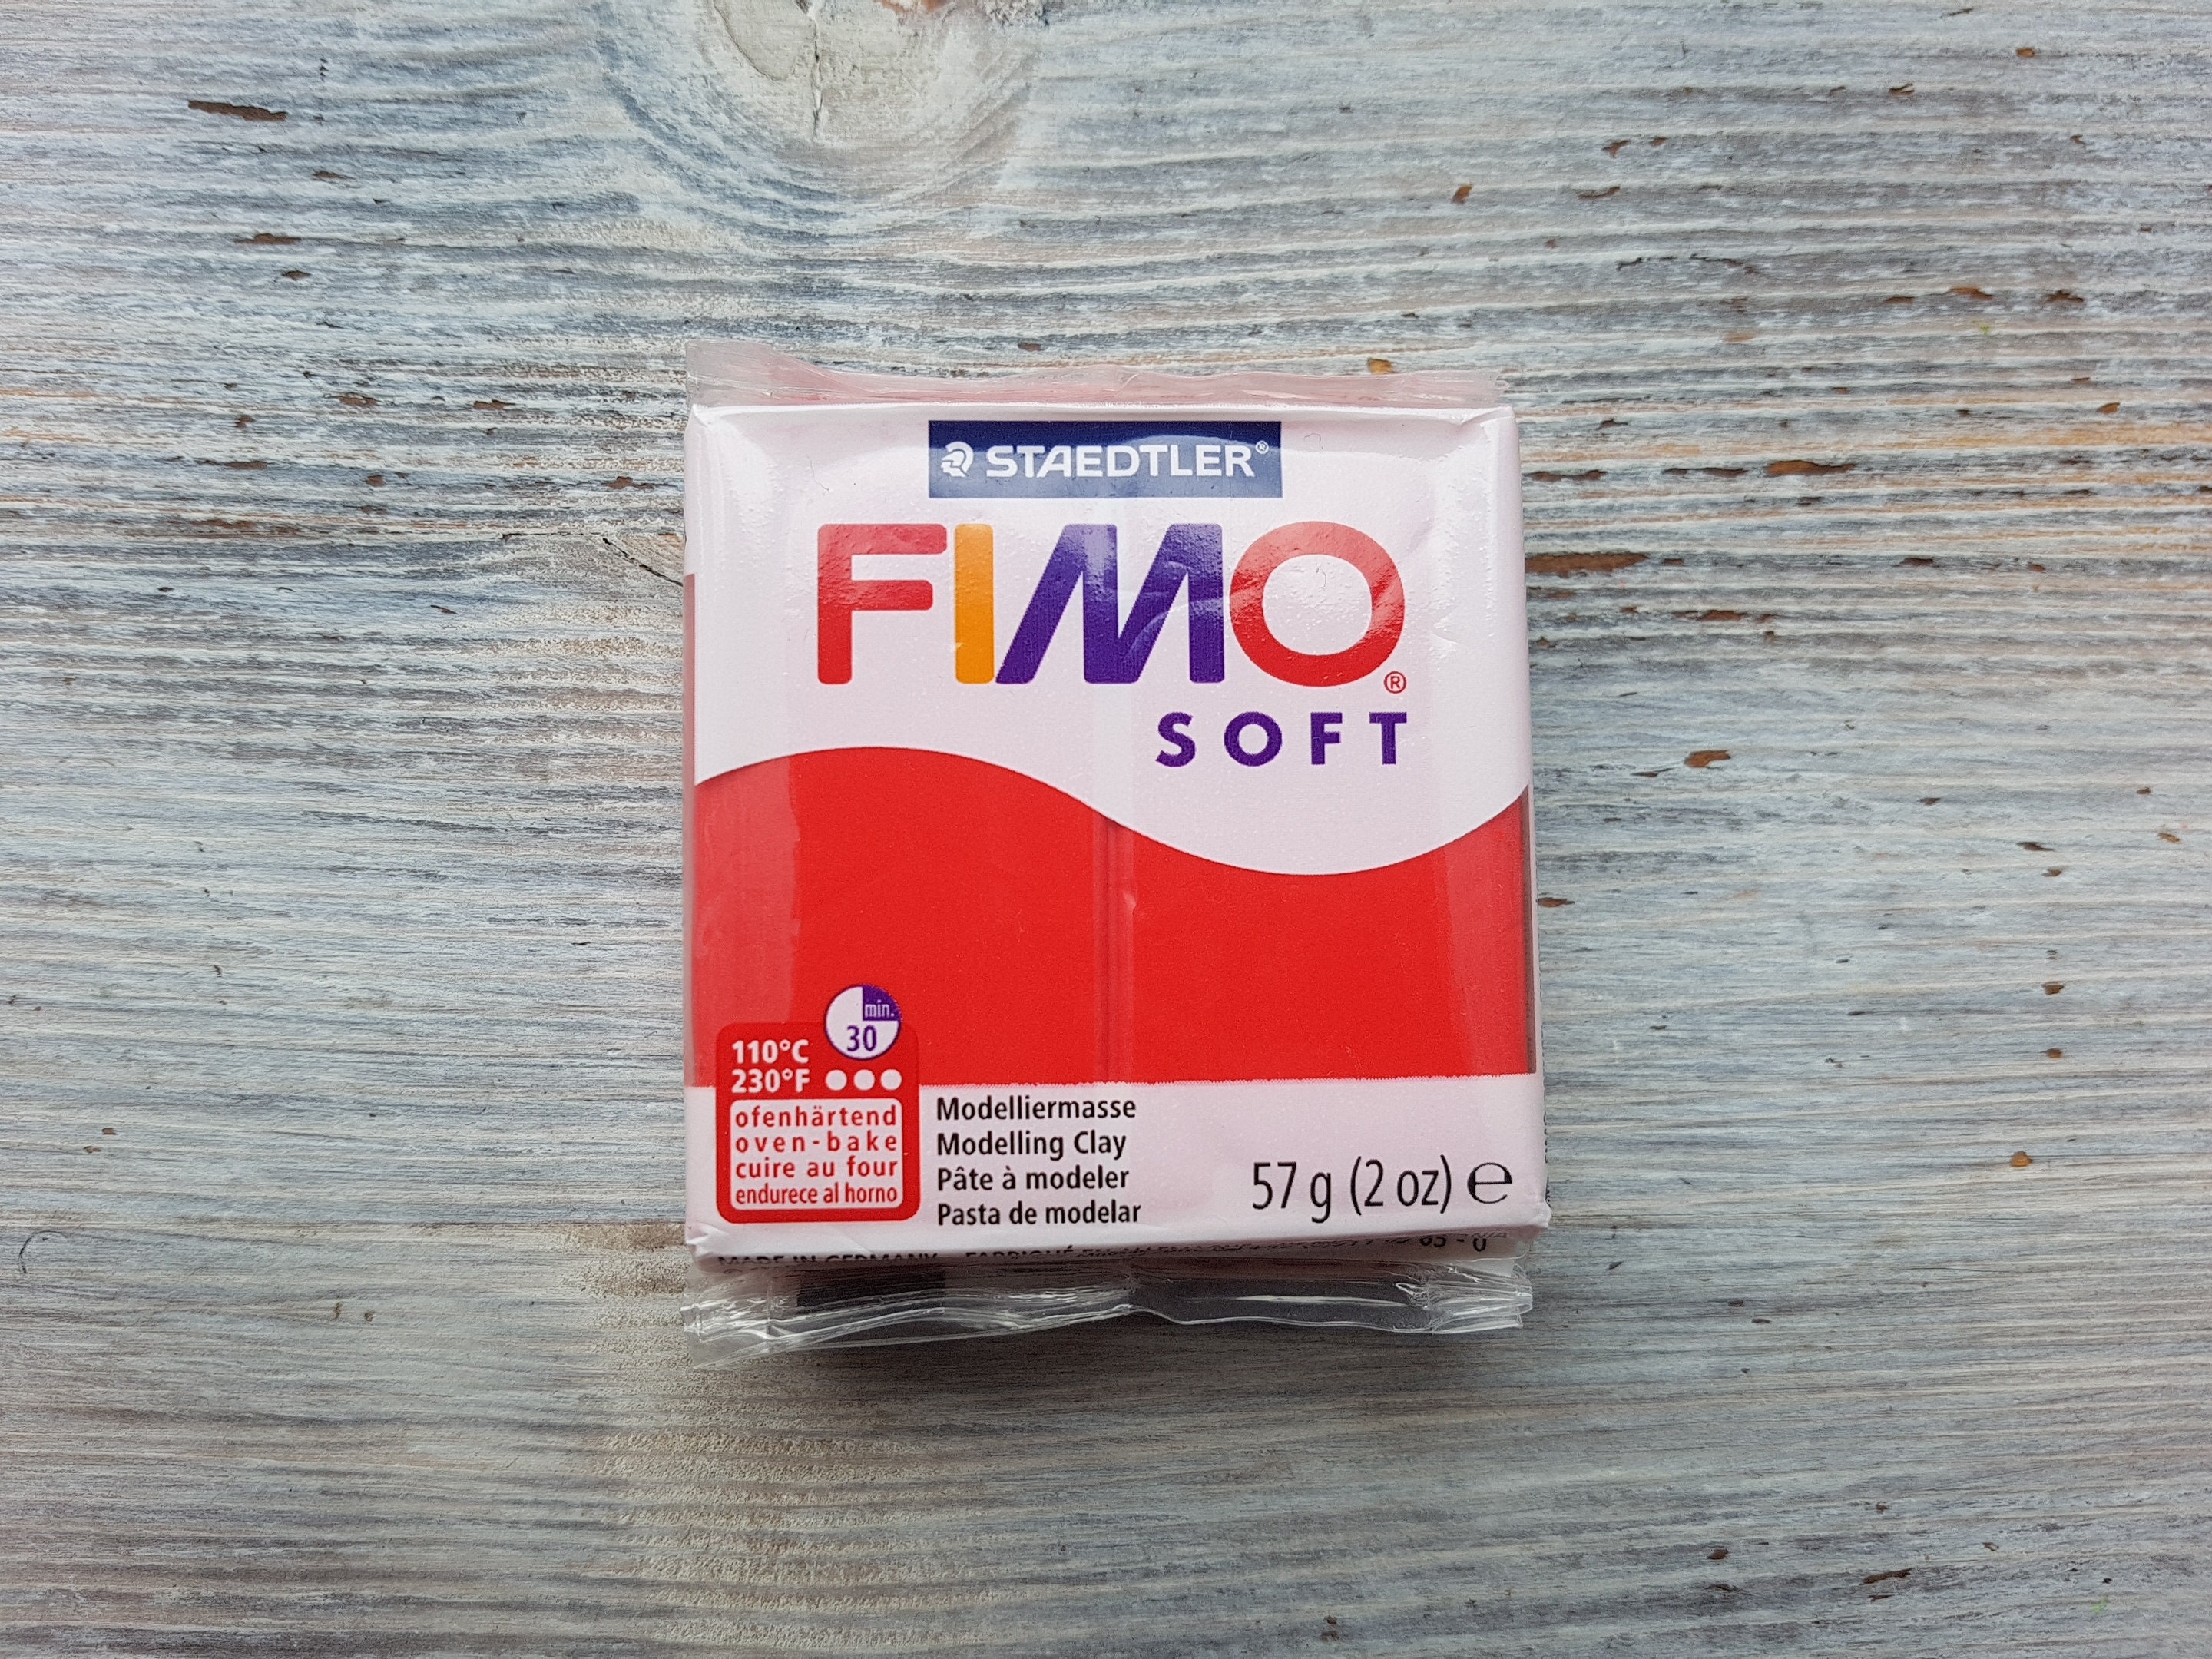 Pâte à modeler Polymère Coffret Fimo Soft 24 x 26 g Fimo chez Rougier & Plé